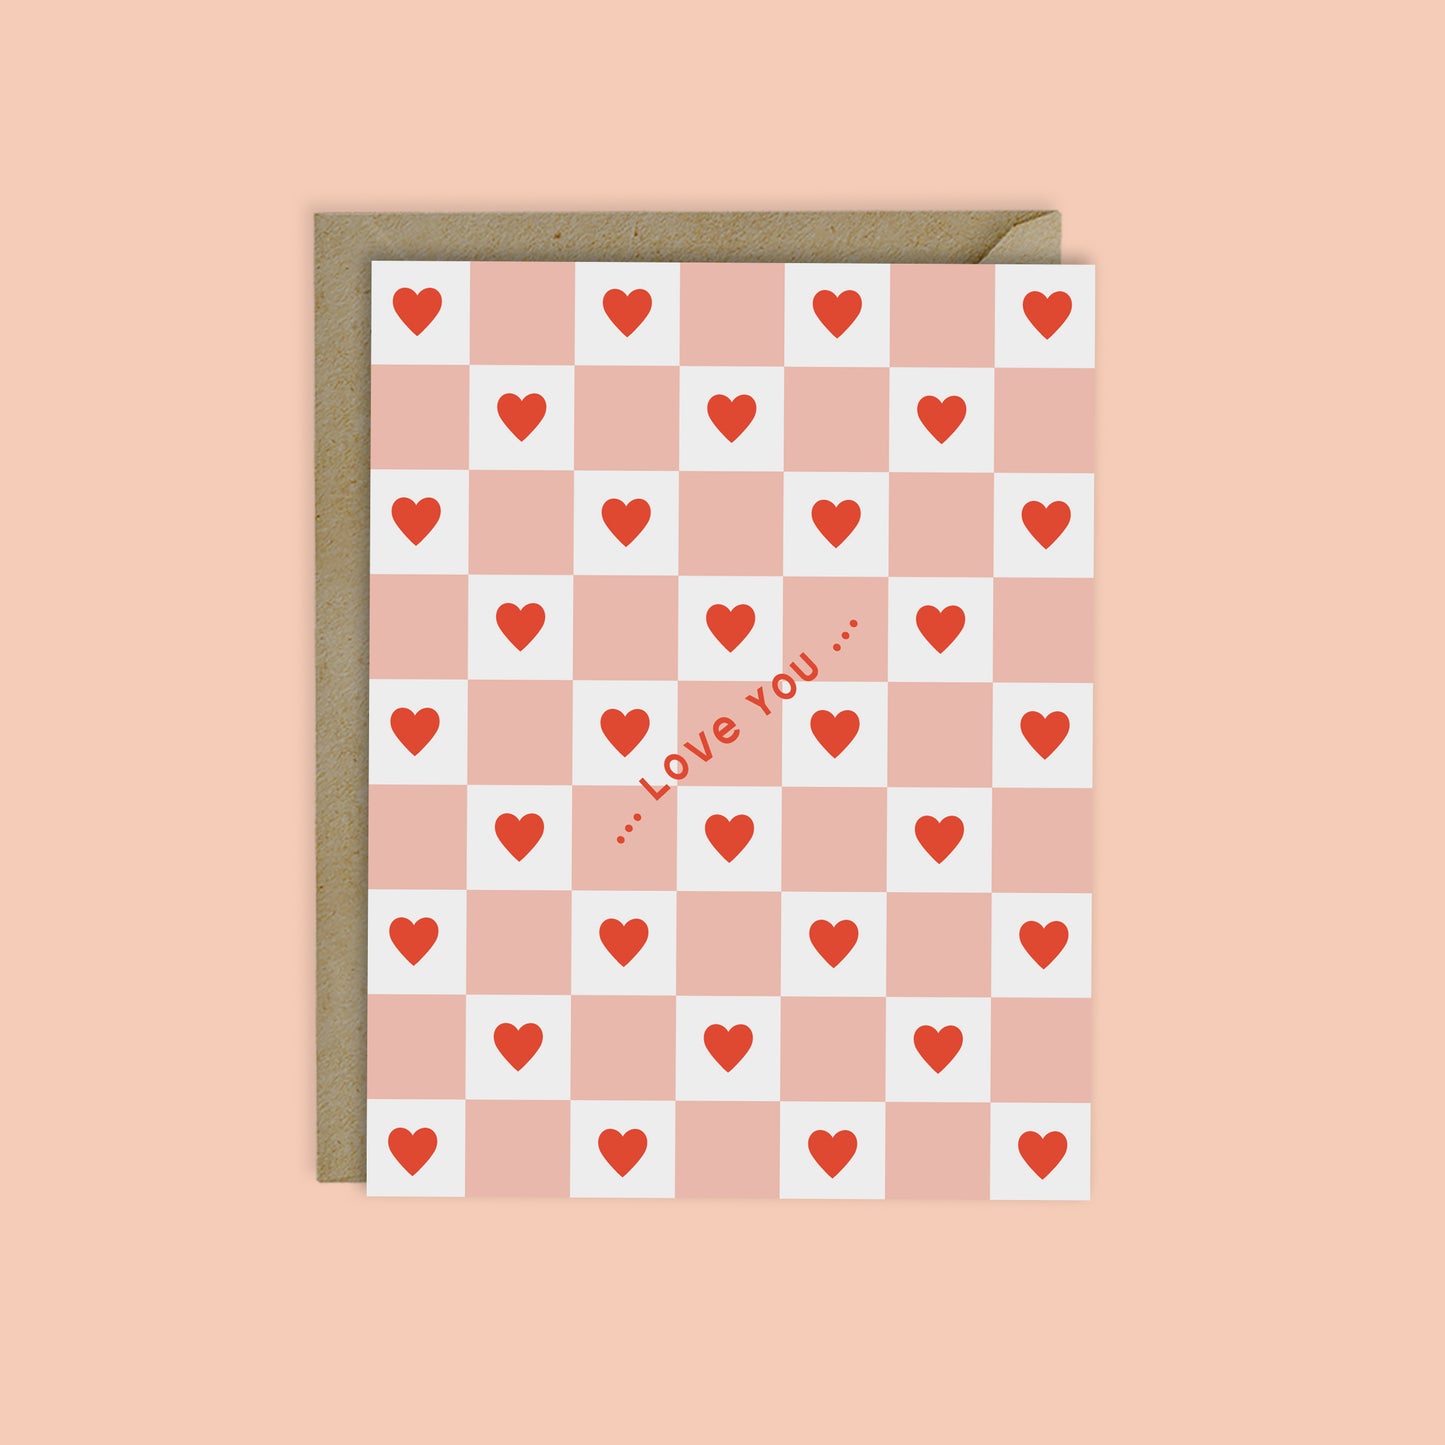 LOVE YOU - CHECKERBOARD HEARTS VALENTINE'S CARD